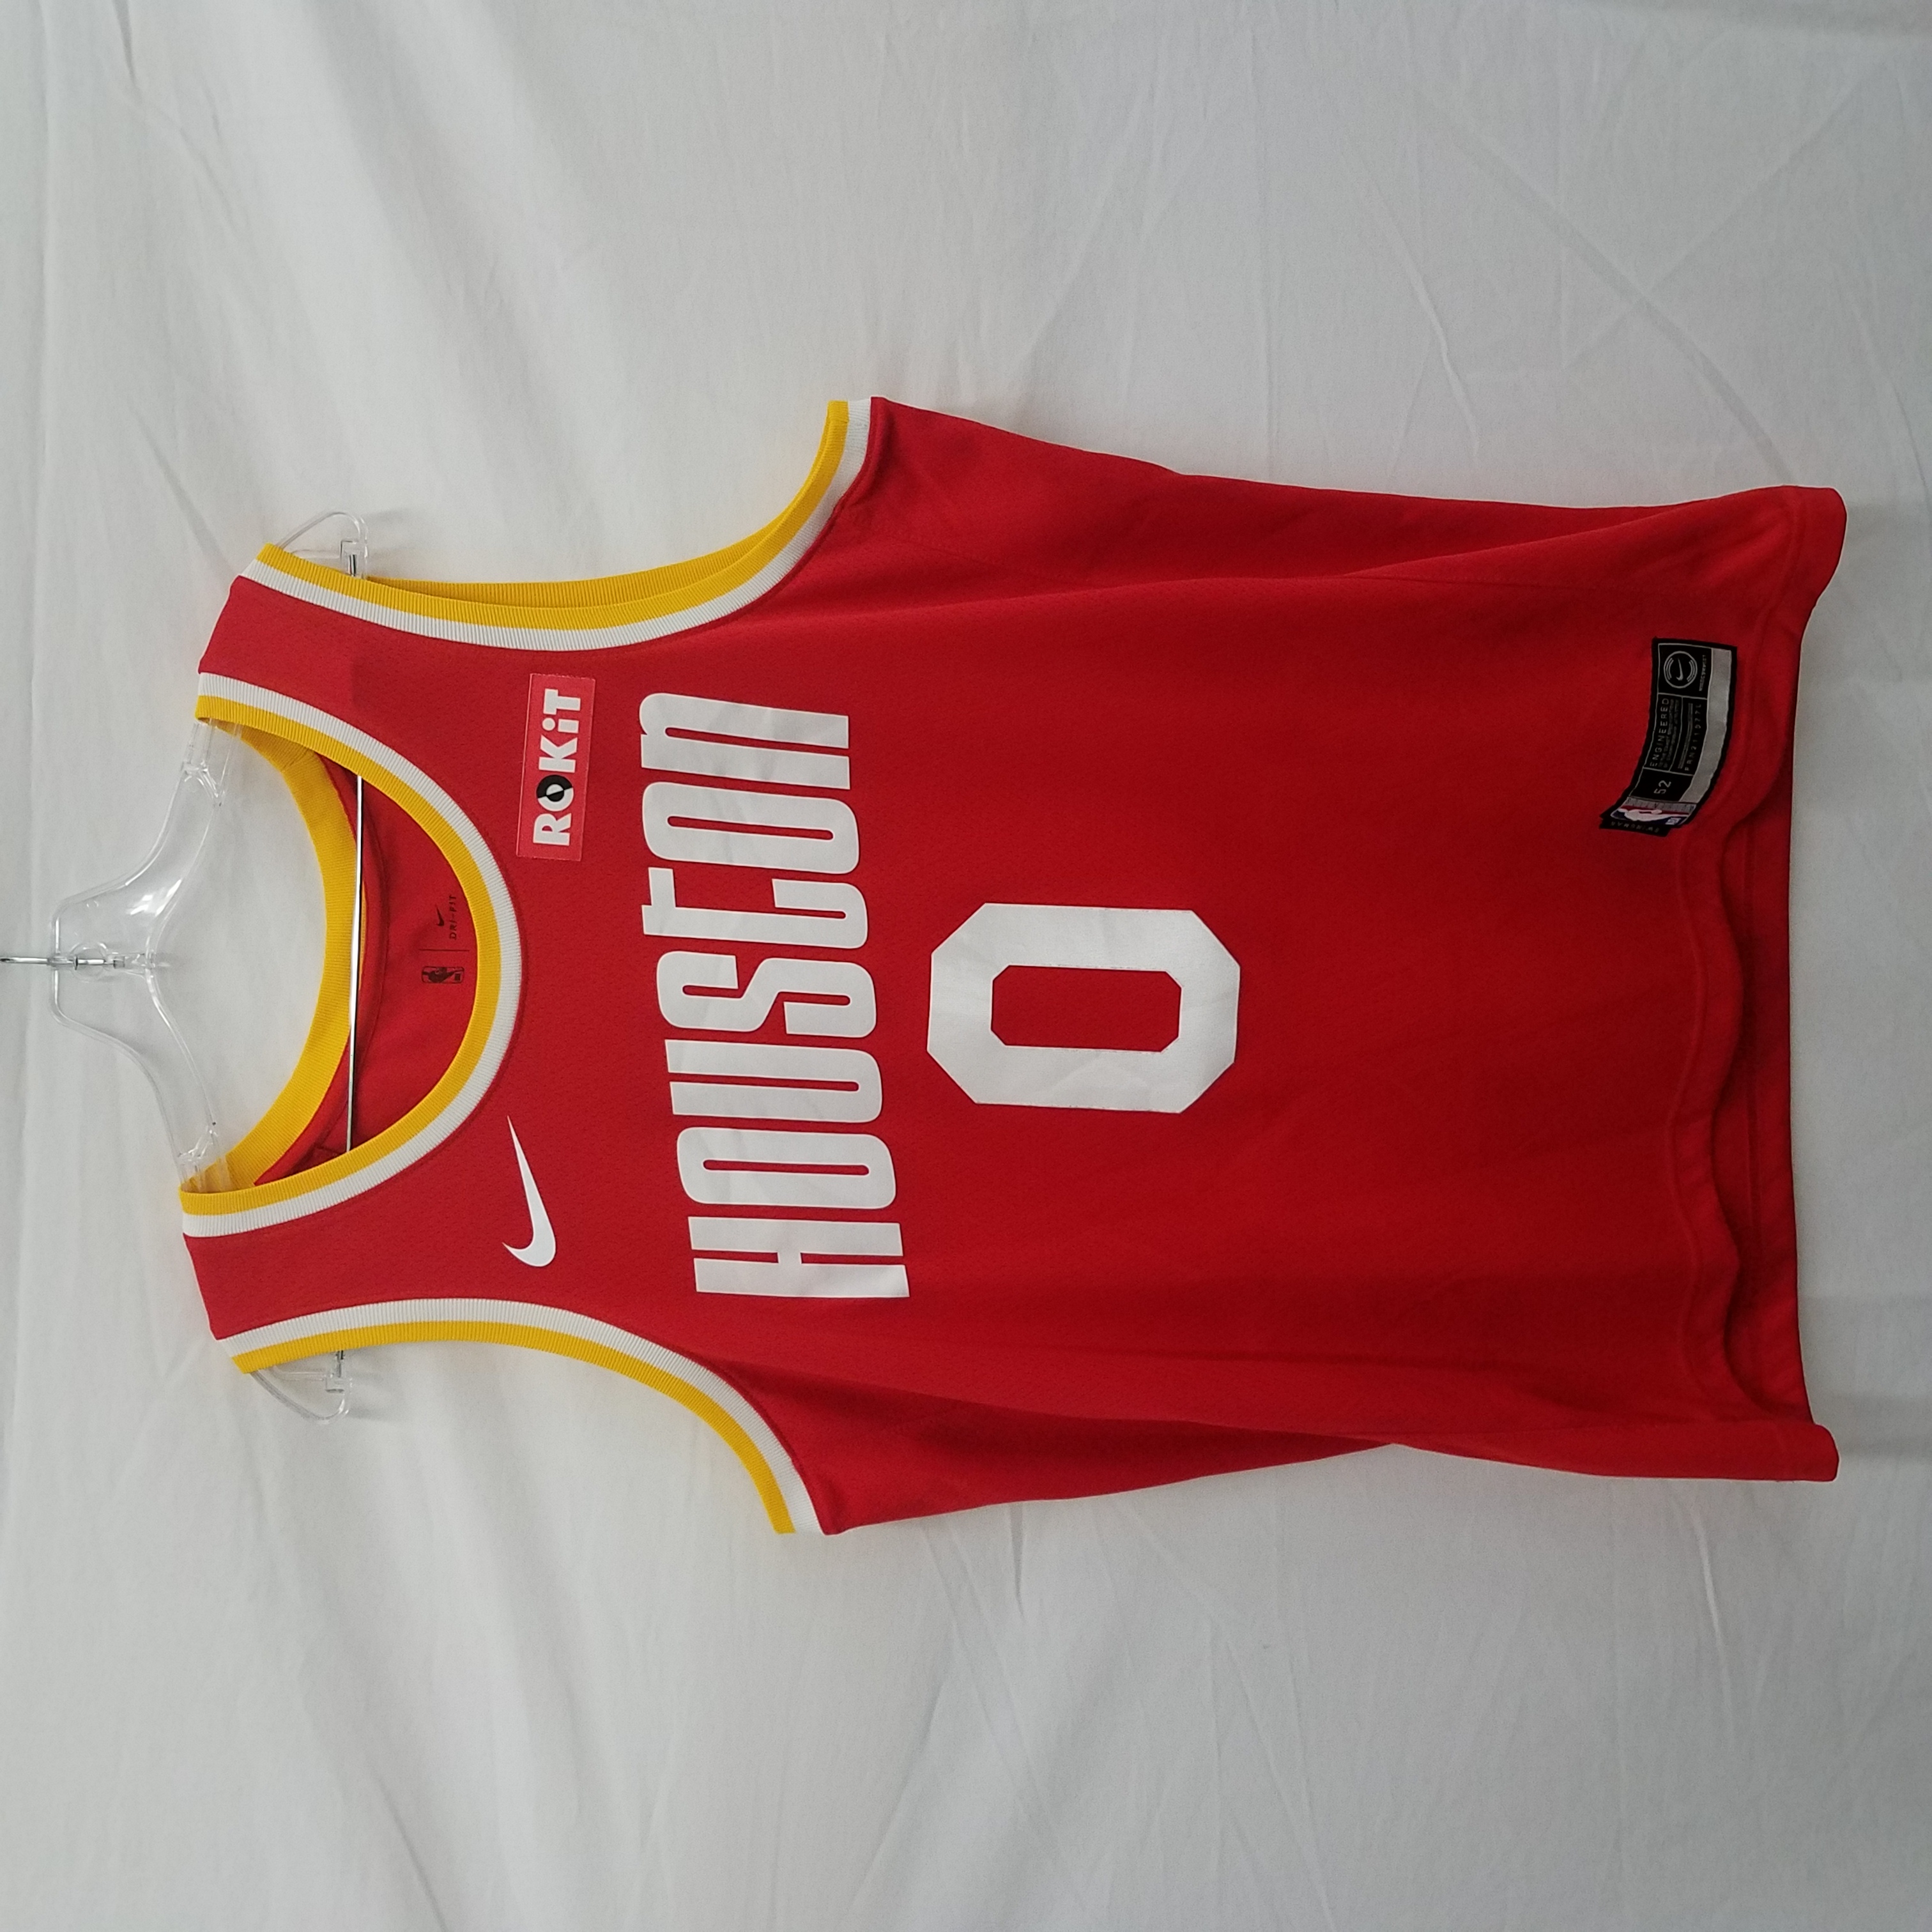 Russell Westbrook Rockets Jerseys: Nike Westbrook Houston Rockets Jersey